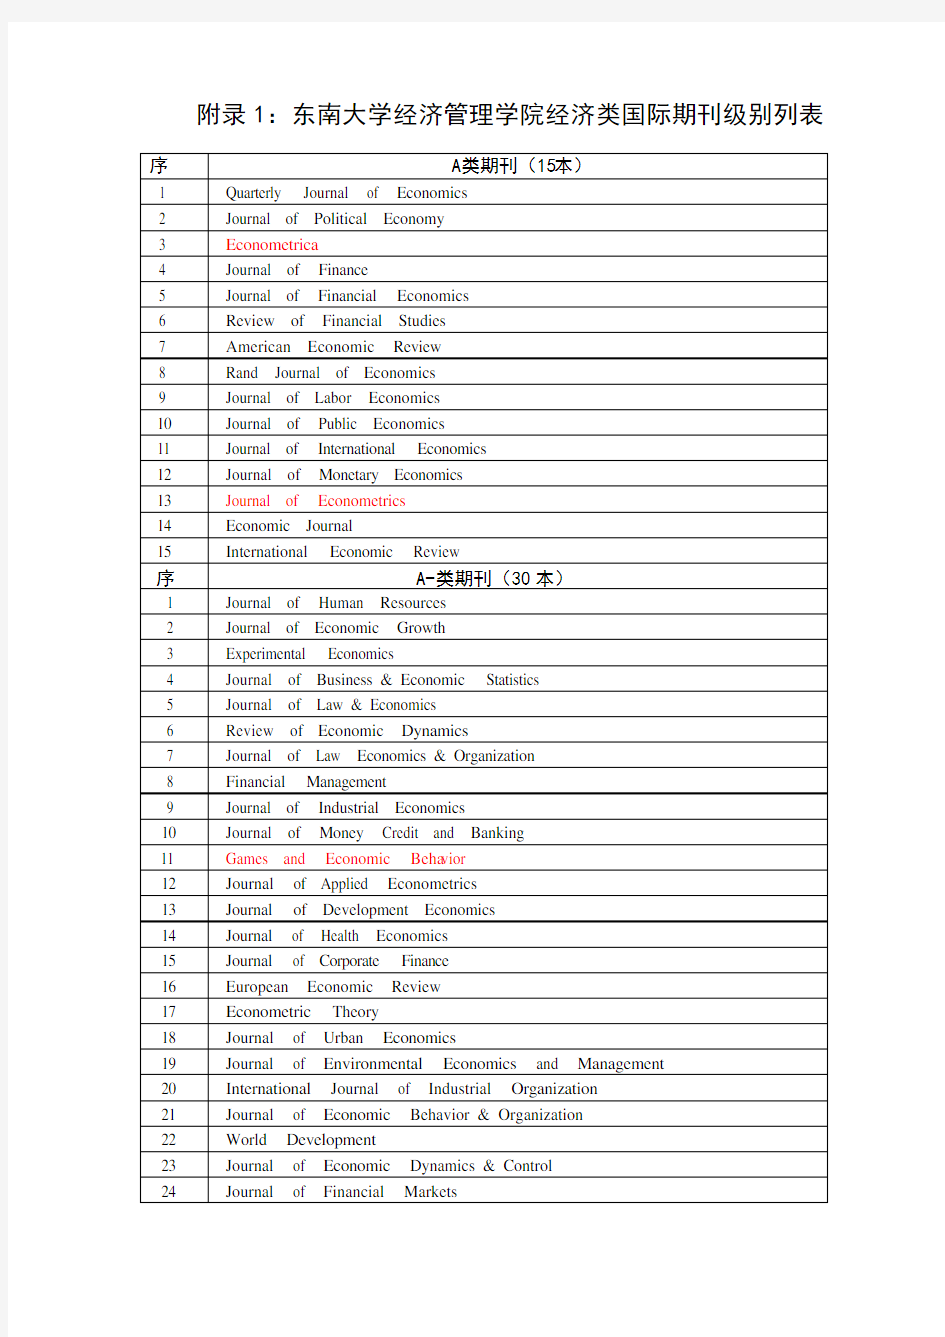 附录1：东南大学经济管理学院国际期刊级别列表标注